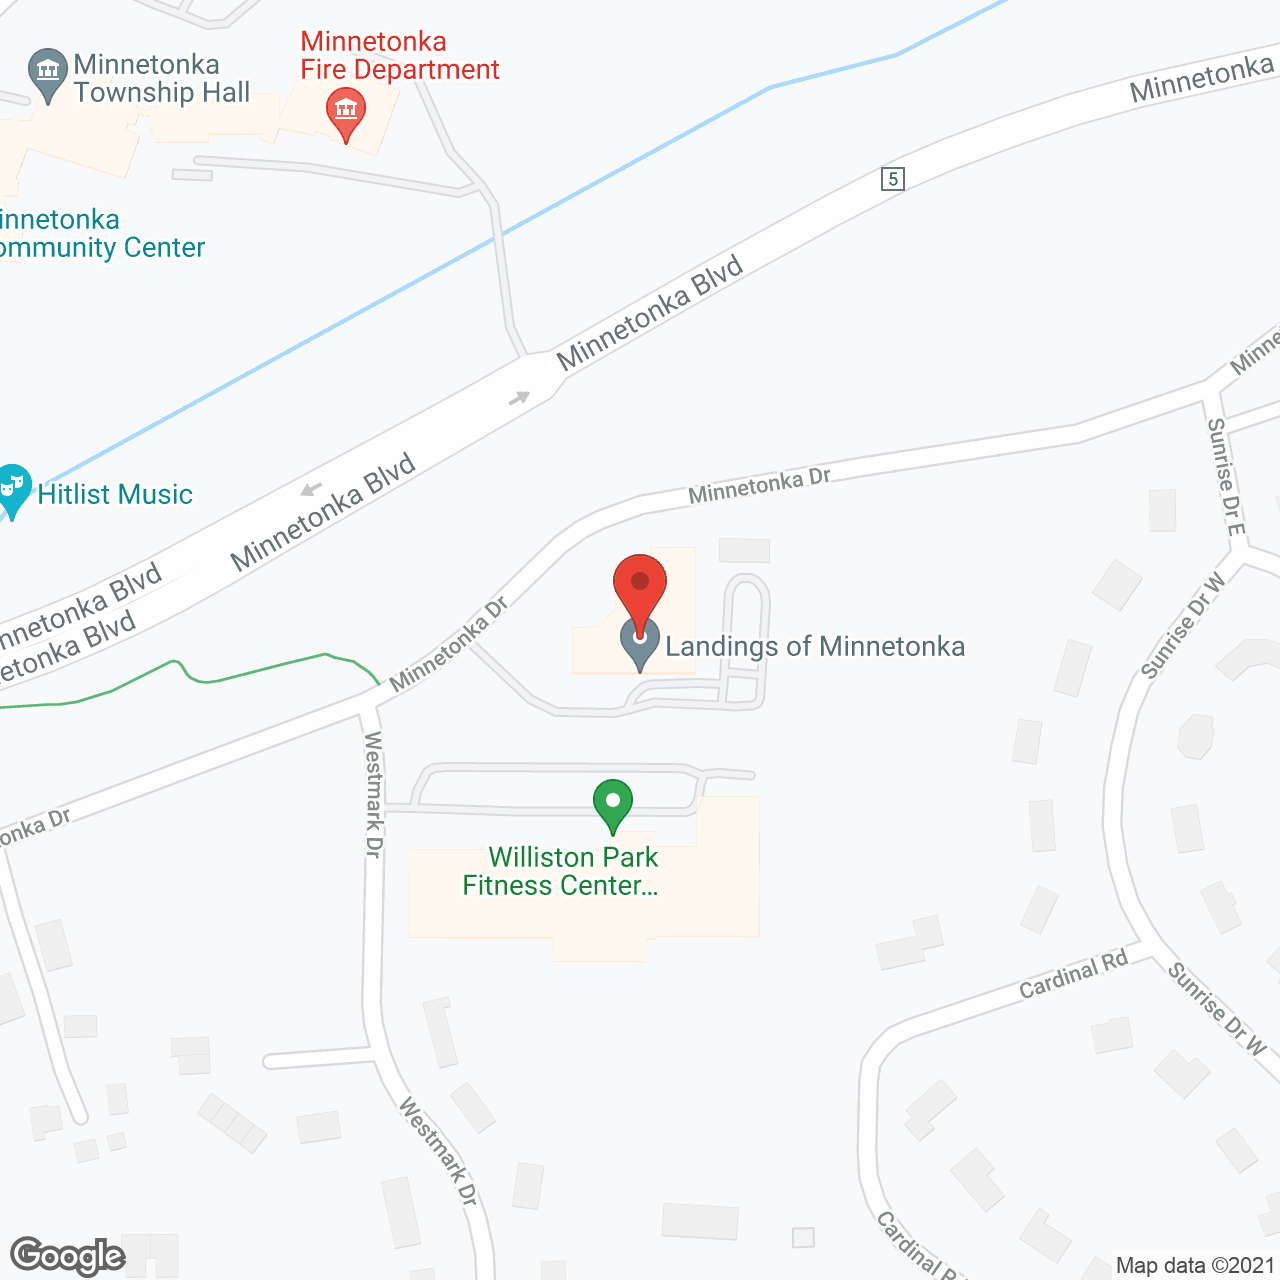 Landings of Minnetonka in google map